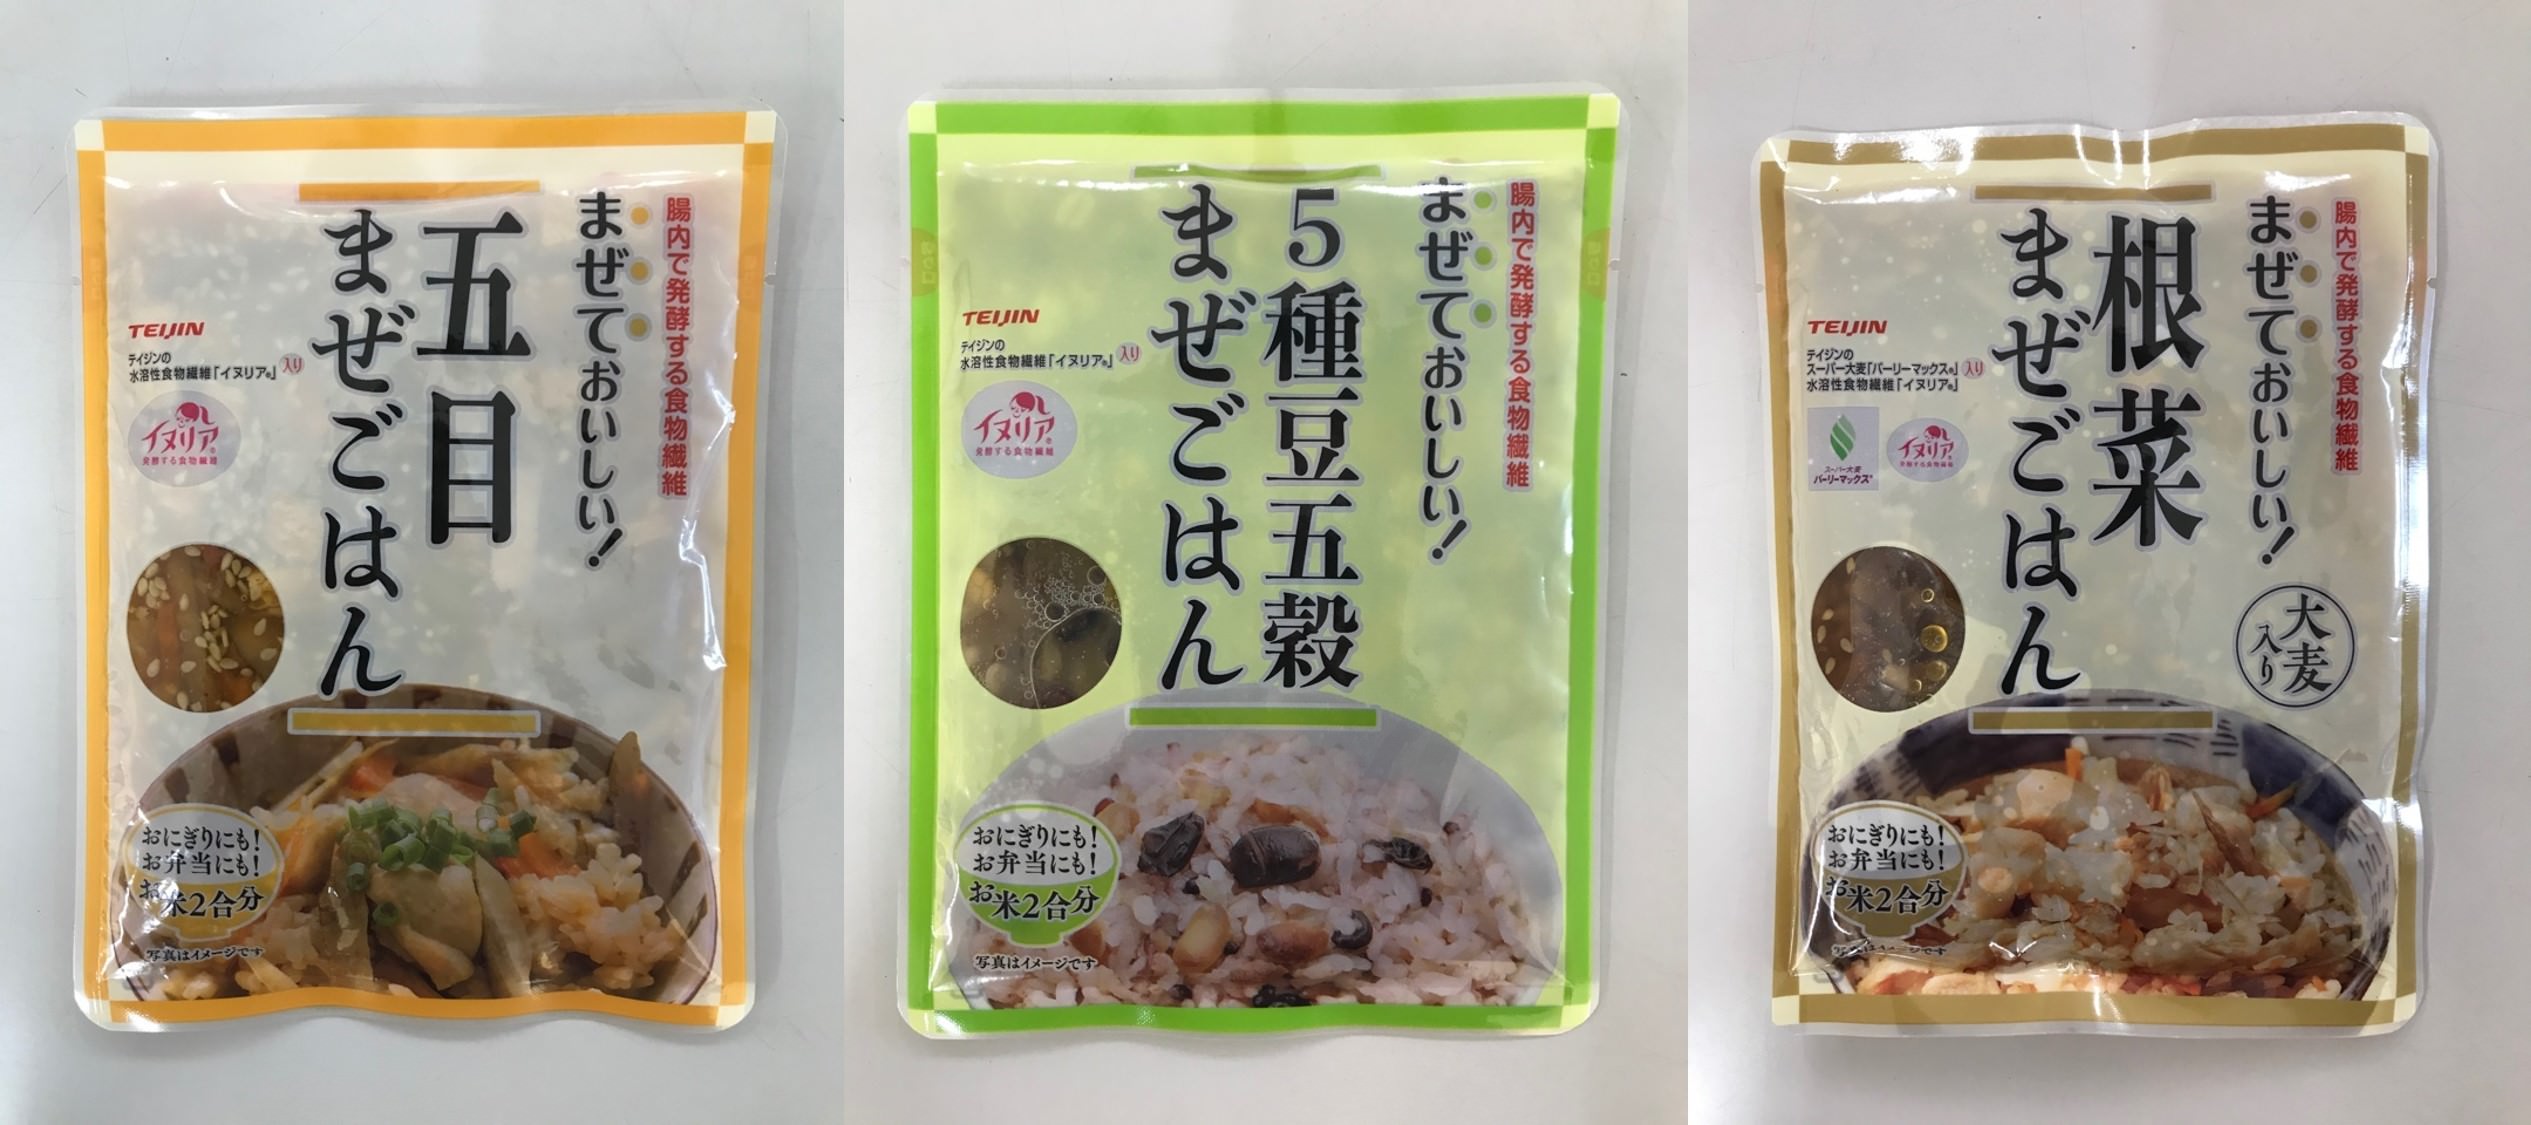 北海道・美瑛町の規格外野菜を使った離乳食開発プロジェクト！
READYFORにて2020年3月10日からクラウドファンディング開始